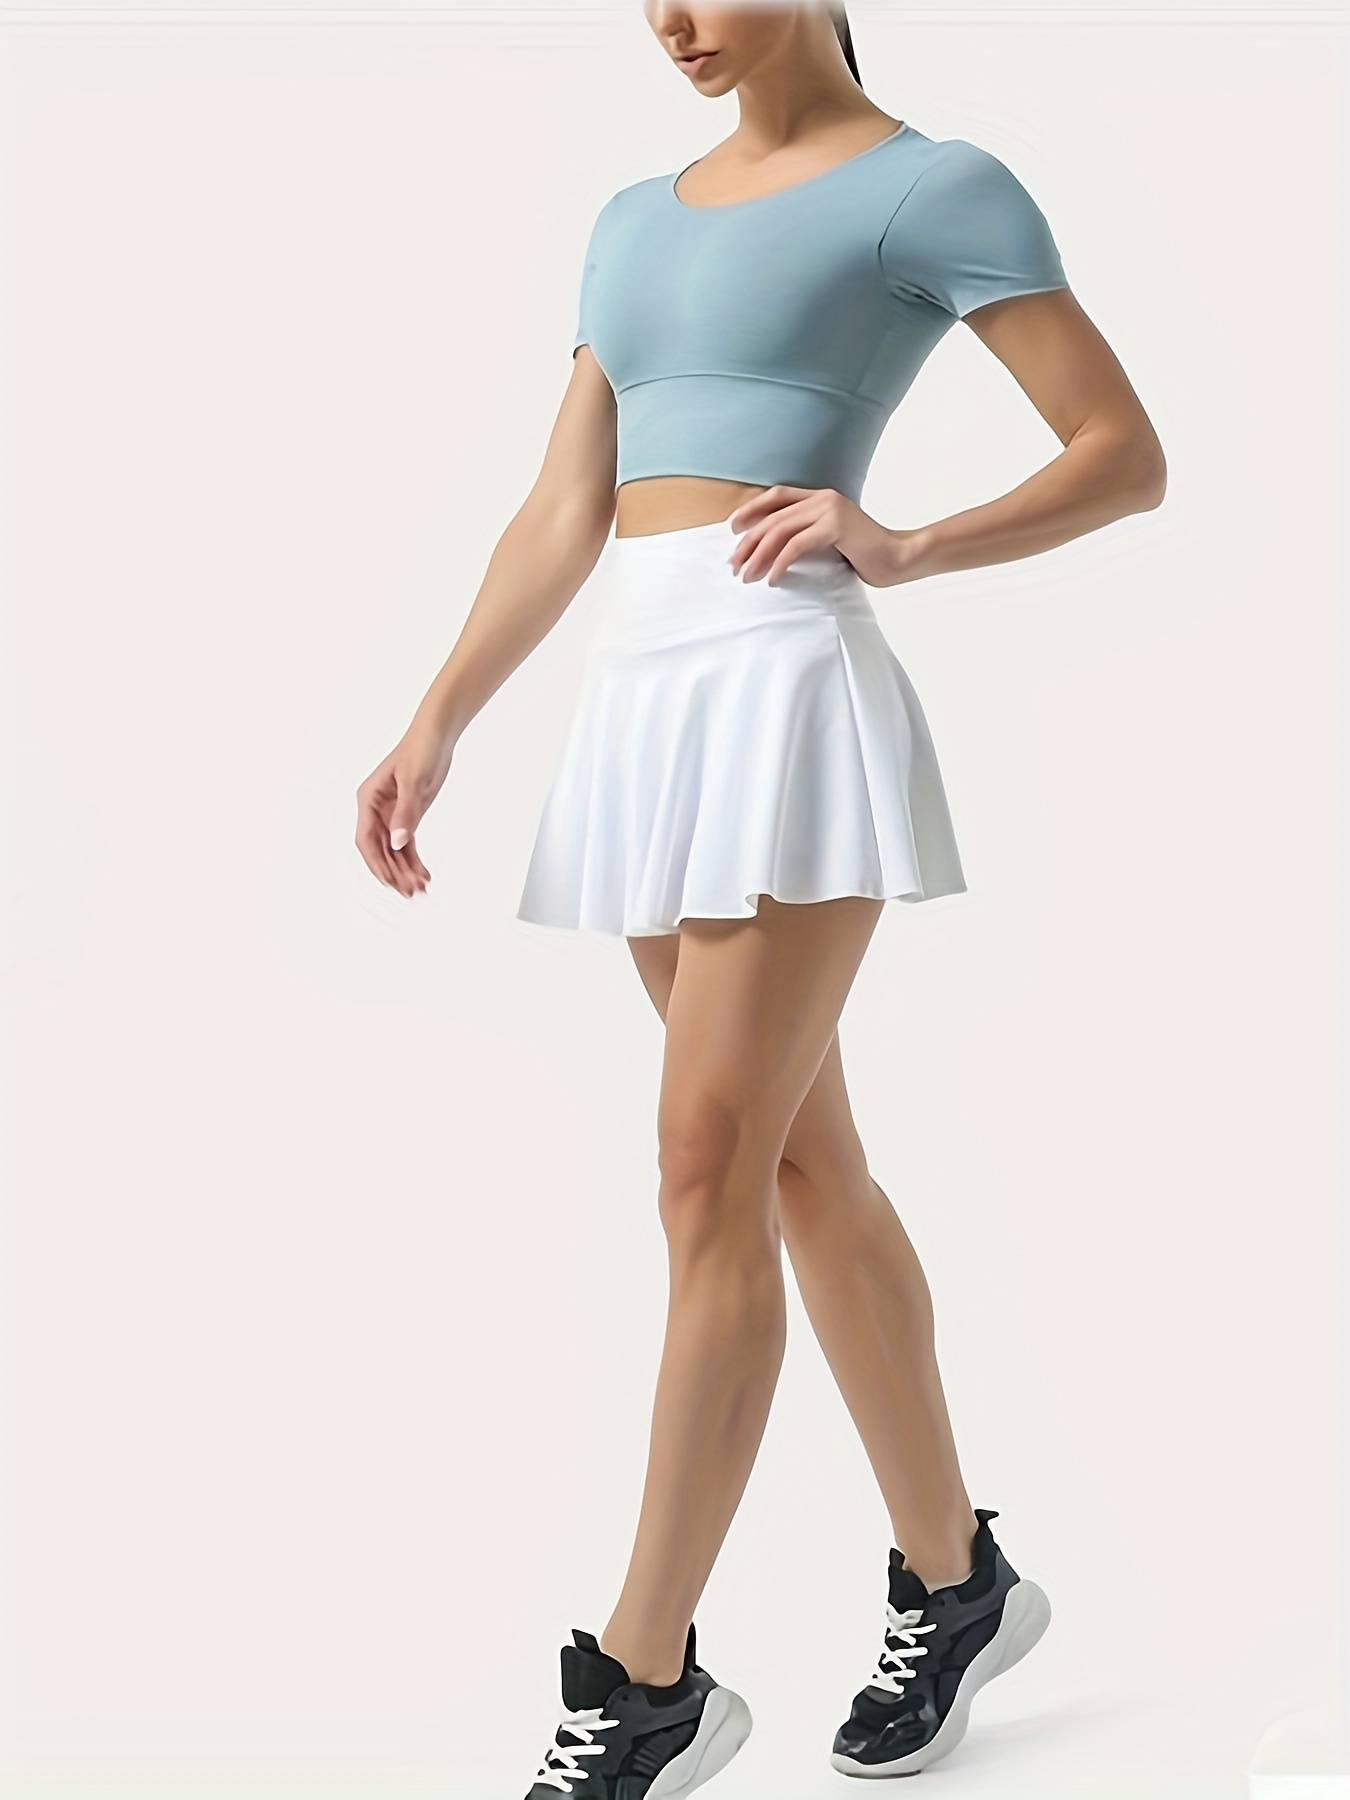 Tennis Skirt Womens Athletic Skort Pleated Skirt Workout Running Skirt Golf  Skirts for Women with Pockets Mini Skirt 